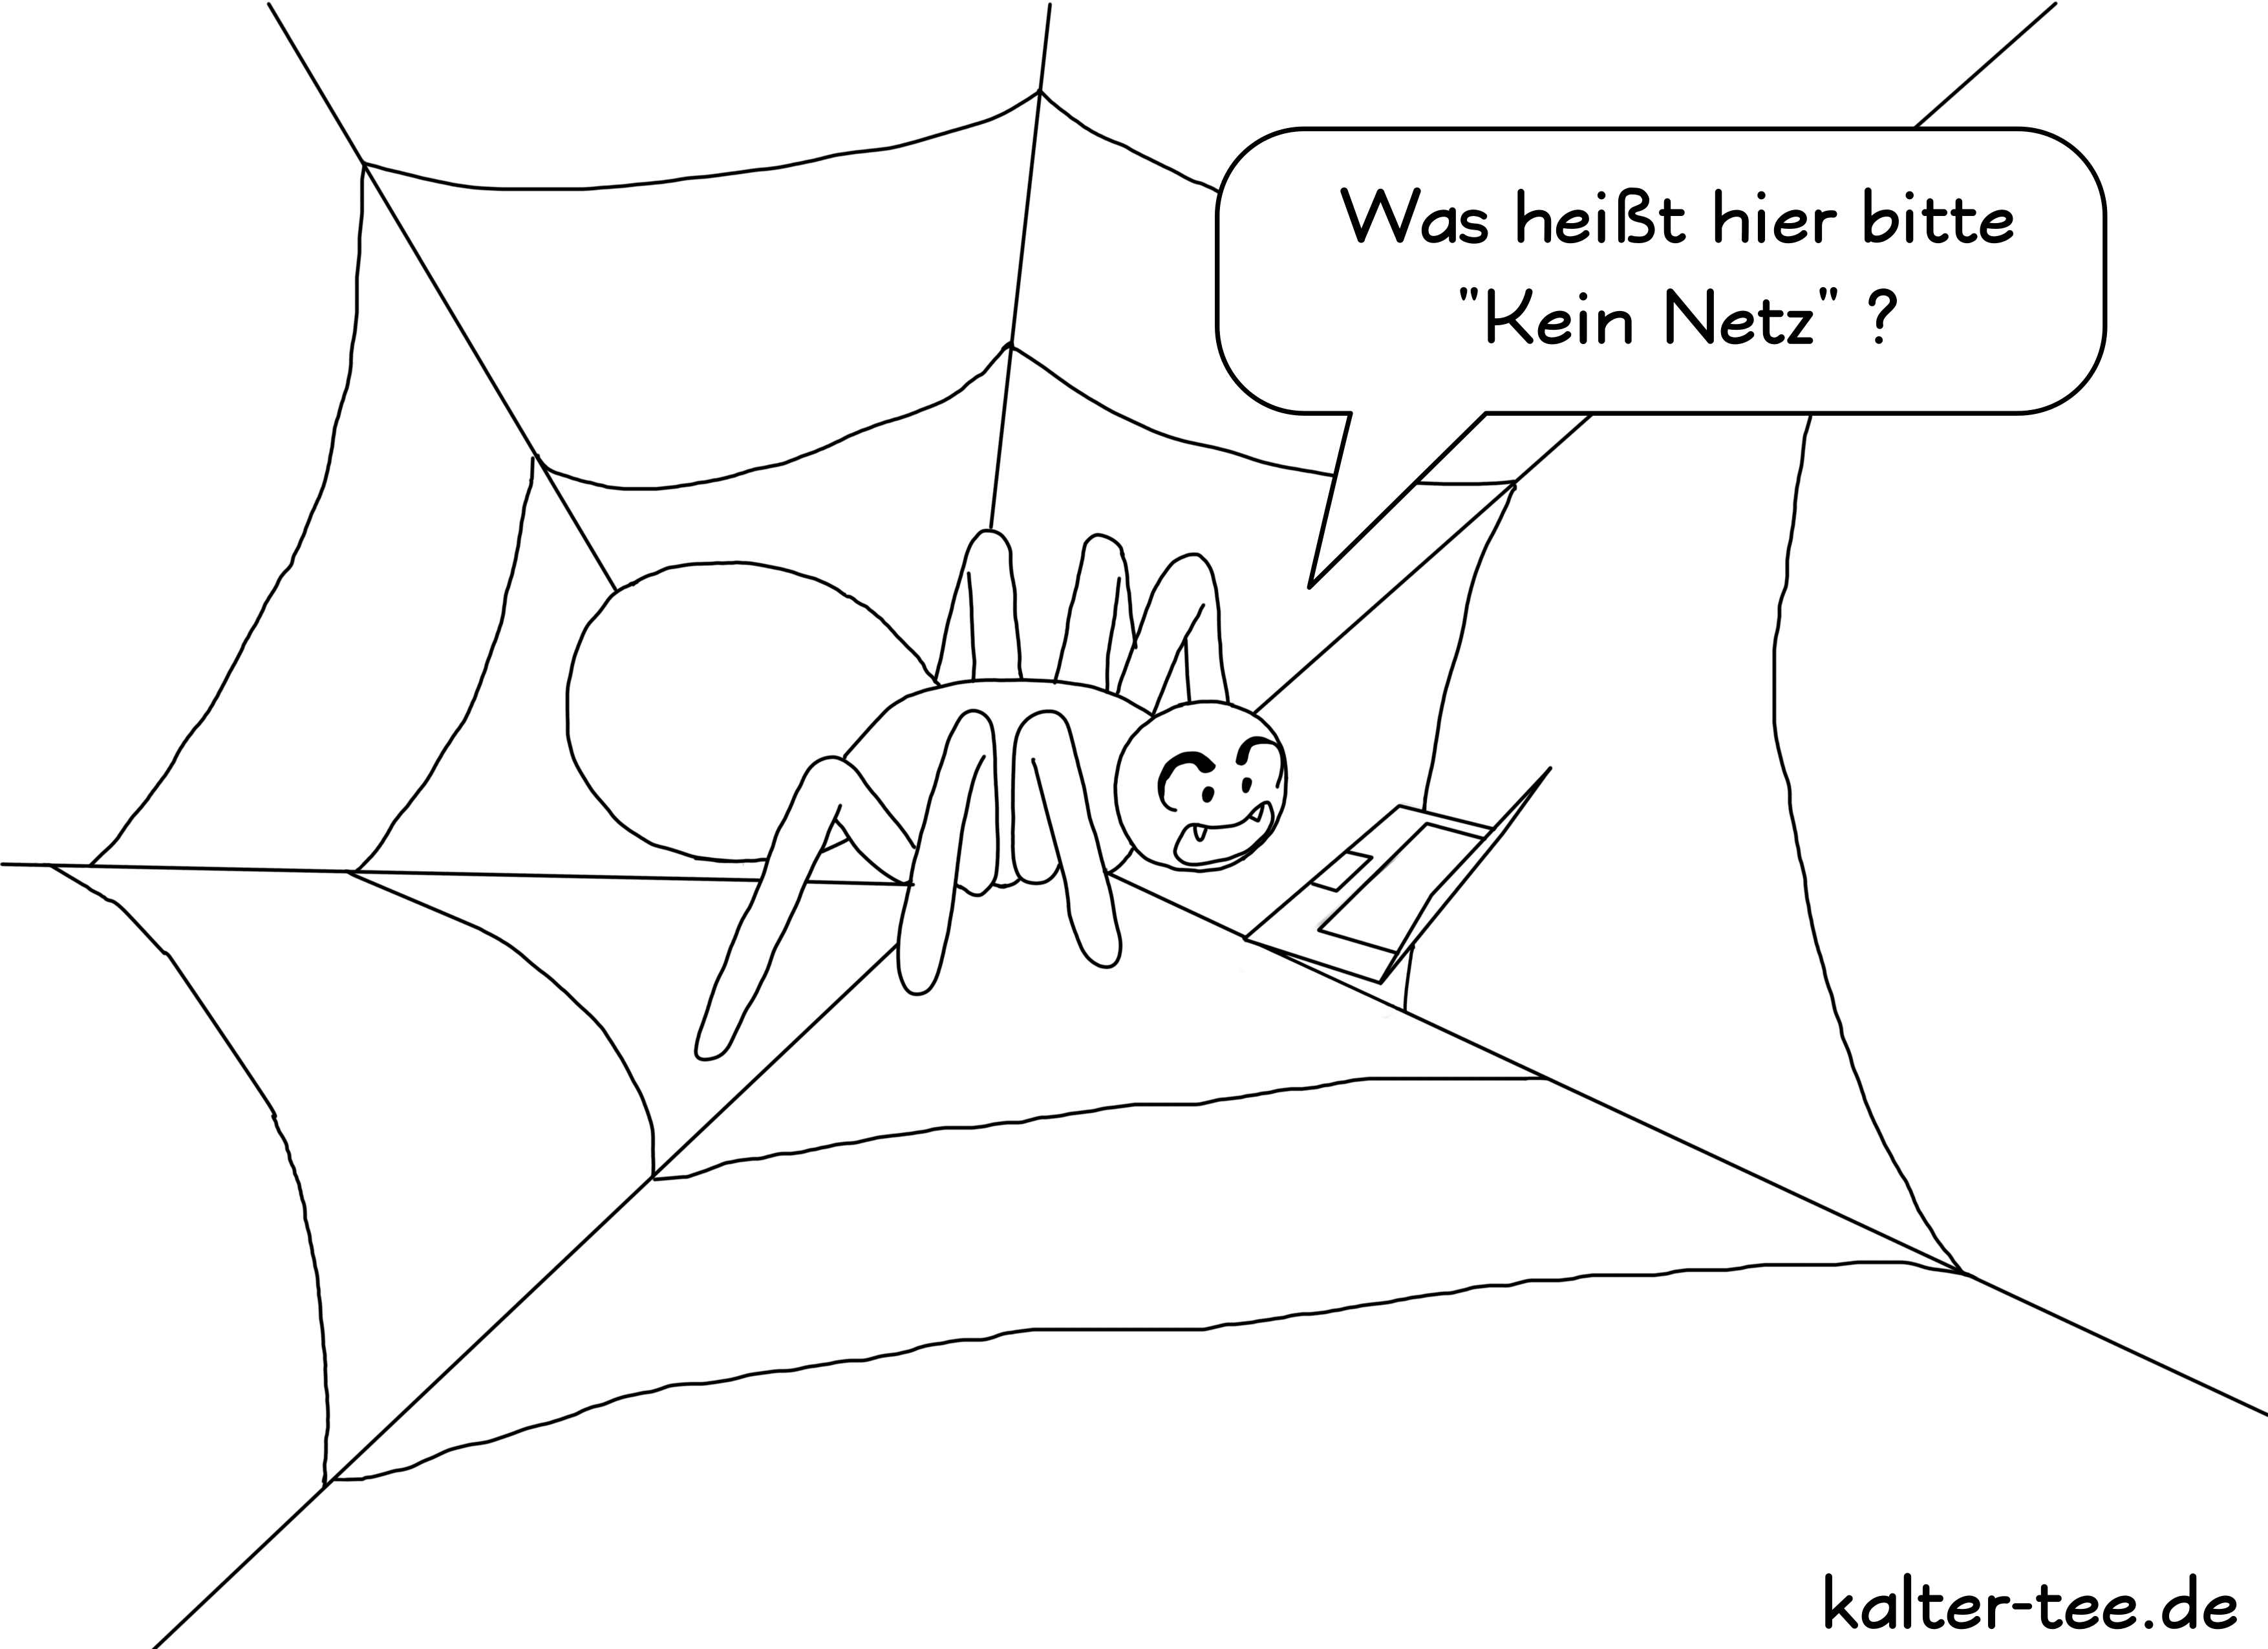 Spinne hat Probleme sich mit ihrem Netz zu verbinden.